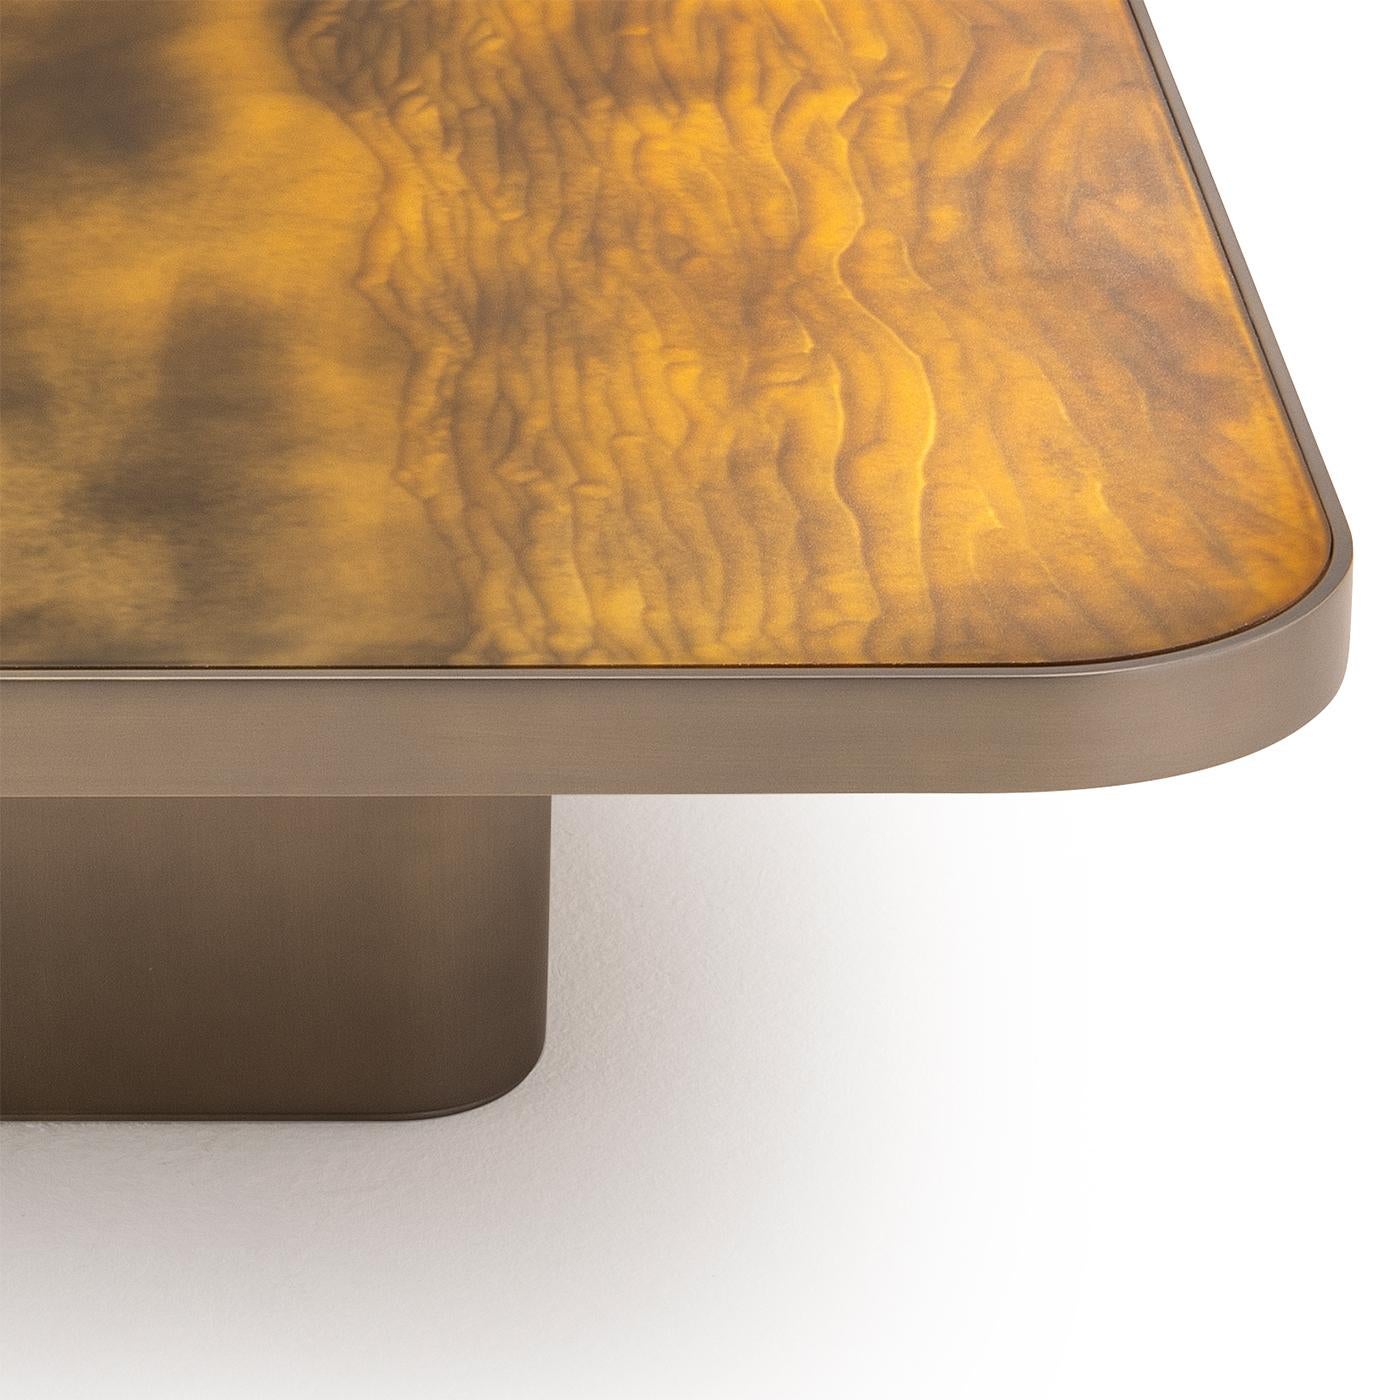 Cette table basse au design exquis est dotée d'un plateau en verre gravé, finition Gargano. La base et les bords extérieurs sont méticuleusement fabriqués en bois, laqué pour obtenir une couleur laiton étonnante. Cette combinaison de matériaux